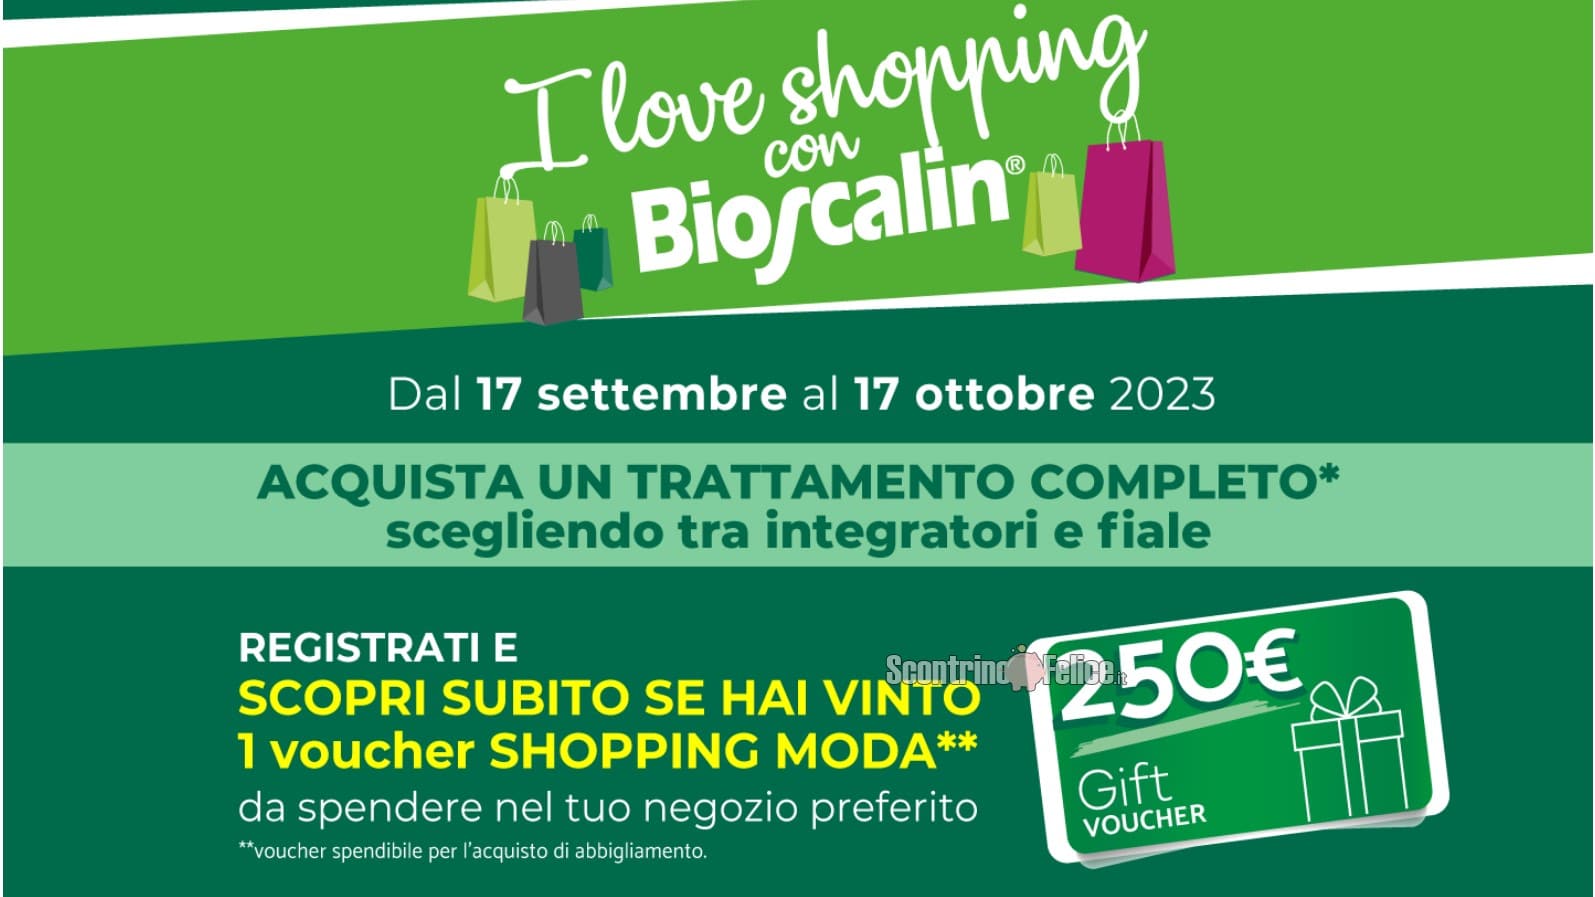 Concorso Bioscalin "I Love Shopping": vinci Voucher Shopping Moda da 250 euro e 2.500 euro!